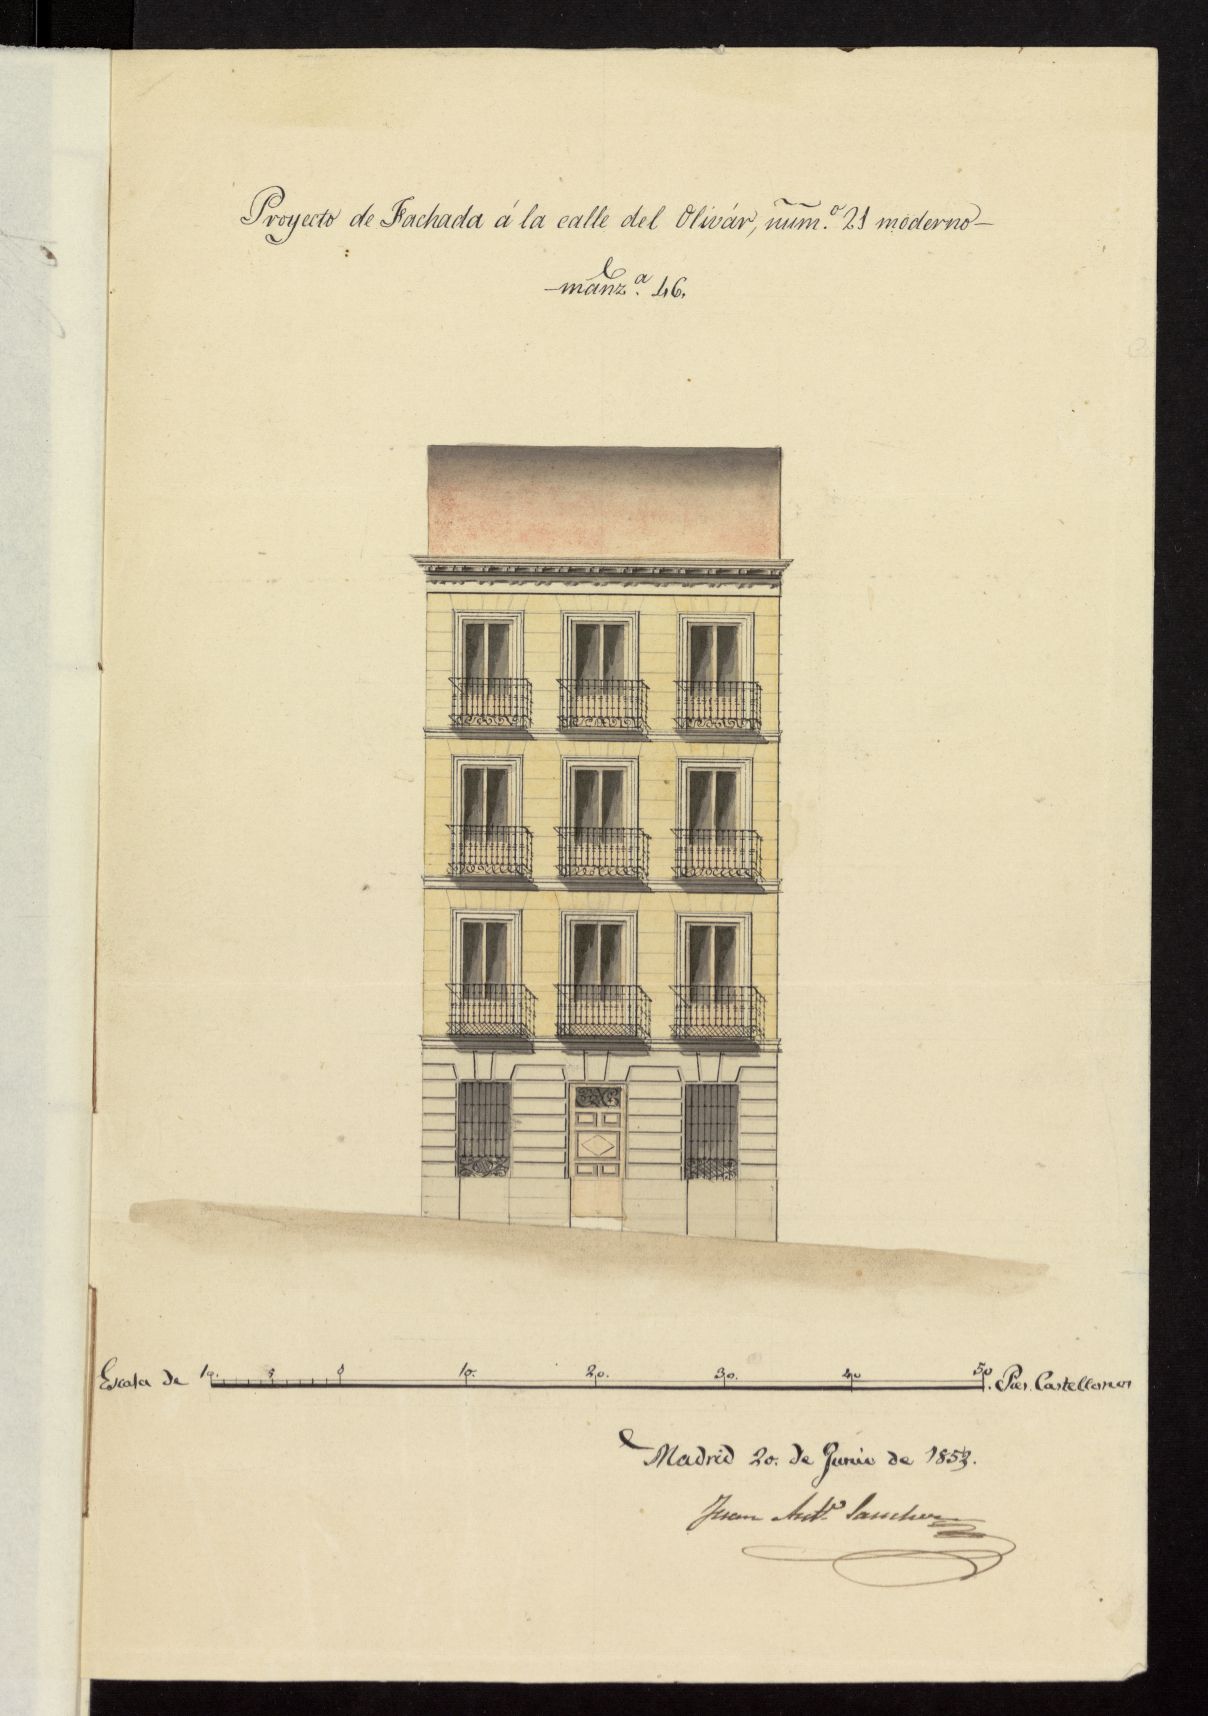 Licencia a D. Ramón Sánchez, para construir en calle del Olivar, nº 21, manzana 46